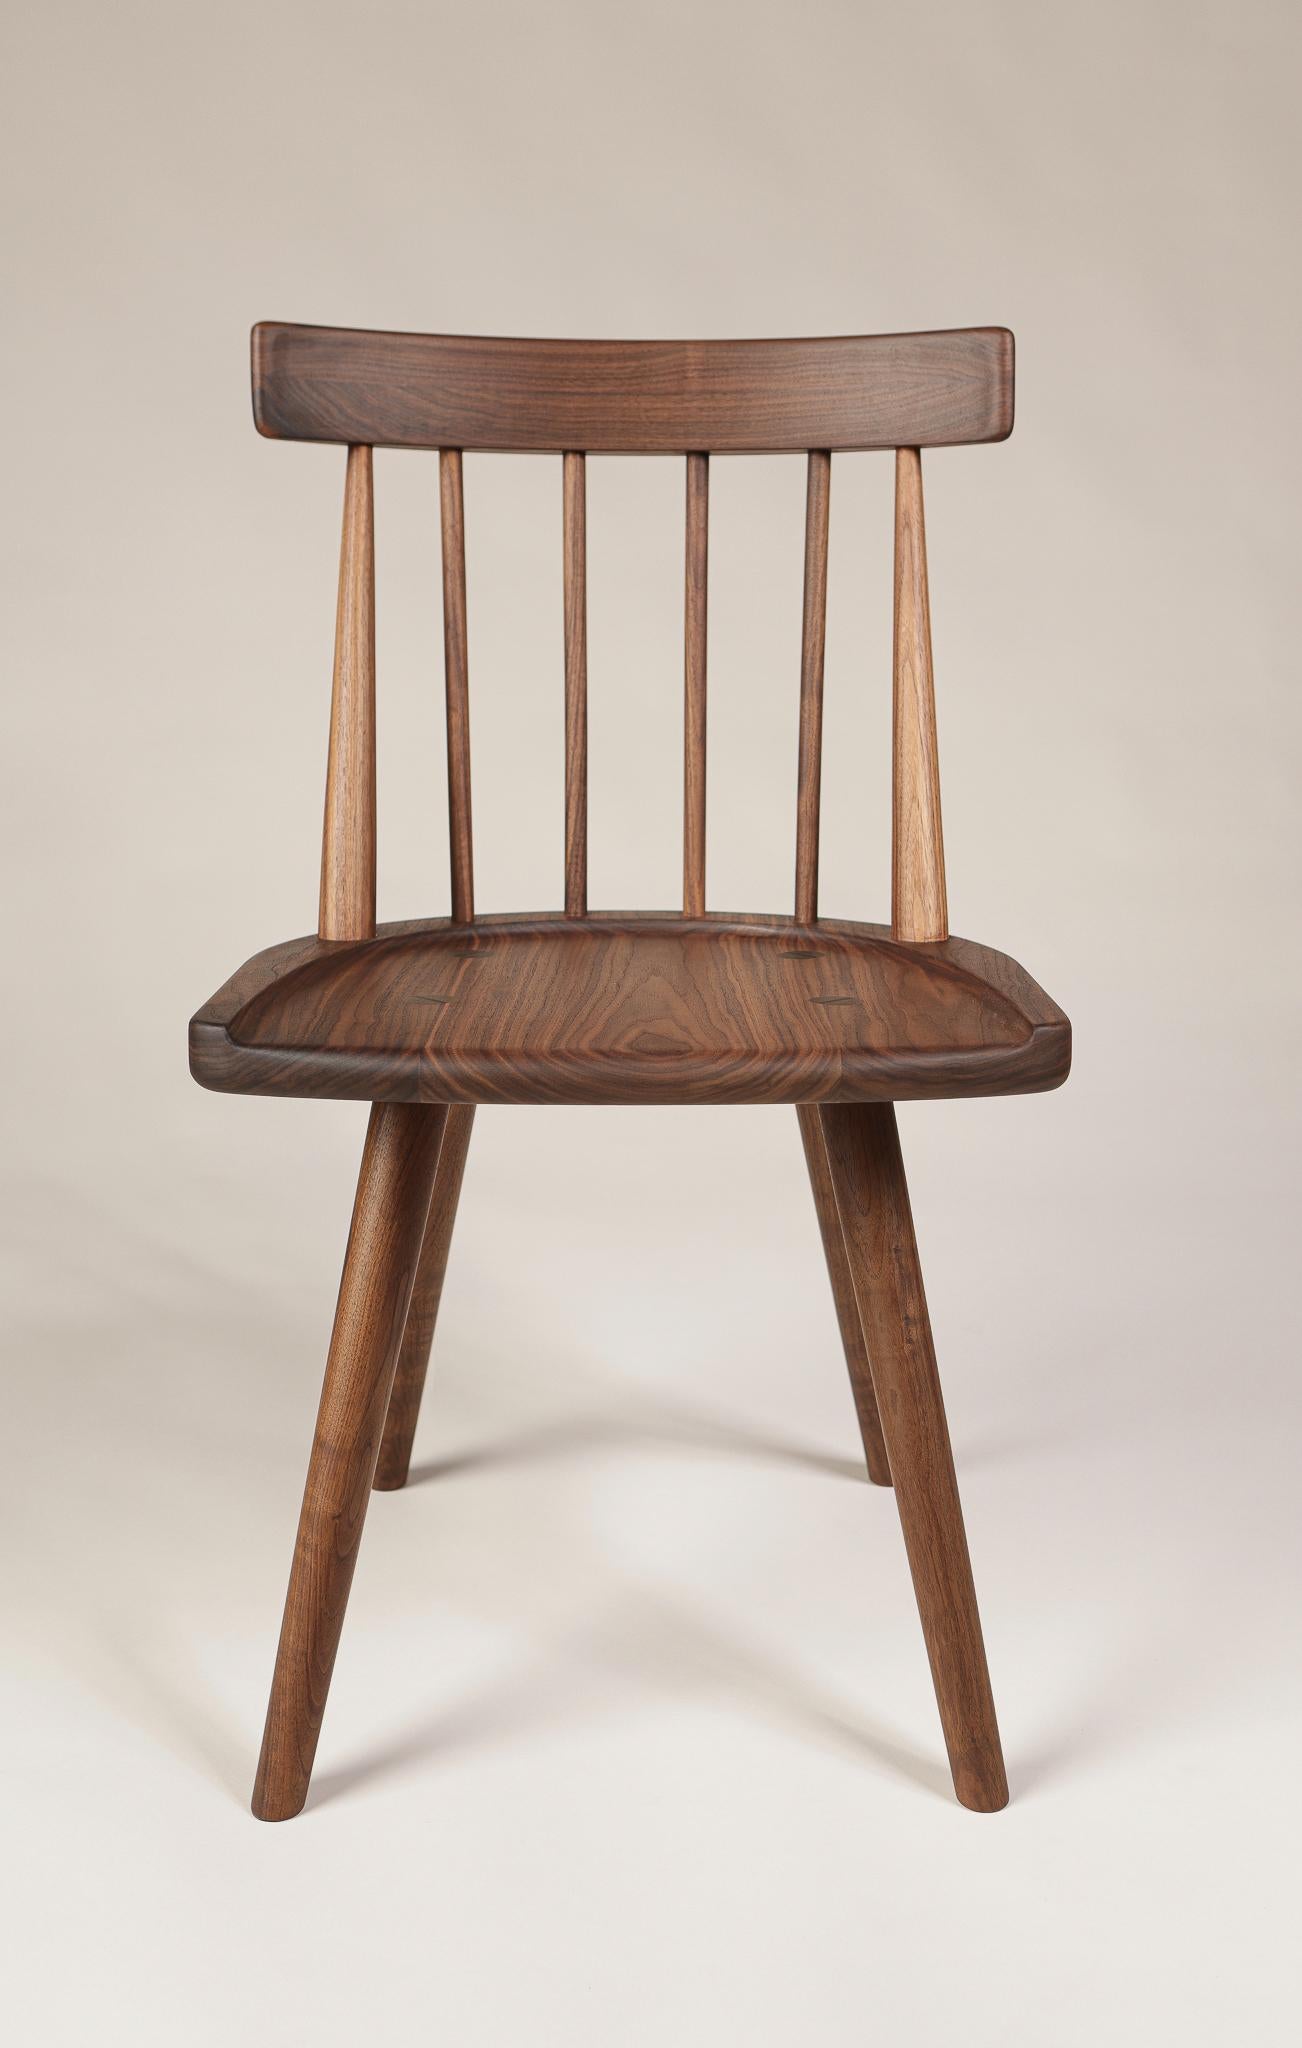 Eine moderne Variante des klassischen Windsor-Stuhls.  Die handgedrechselten Spindeln sind verkeilt und mit Zapfen und Schlössern versehen, um Stärke und Ästhetik zu gewährleisten - ein Stück in Erbstückqualität. 

Die Stühle werden auf Bestellung